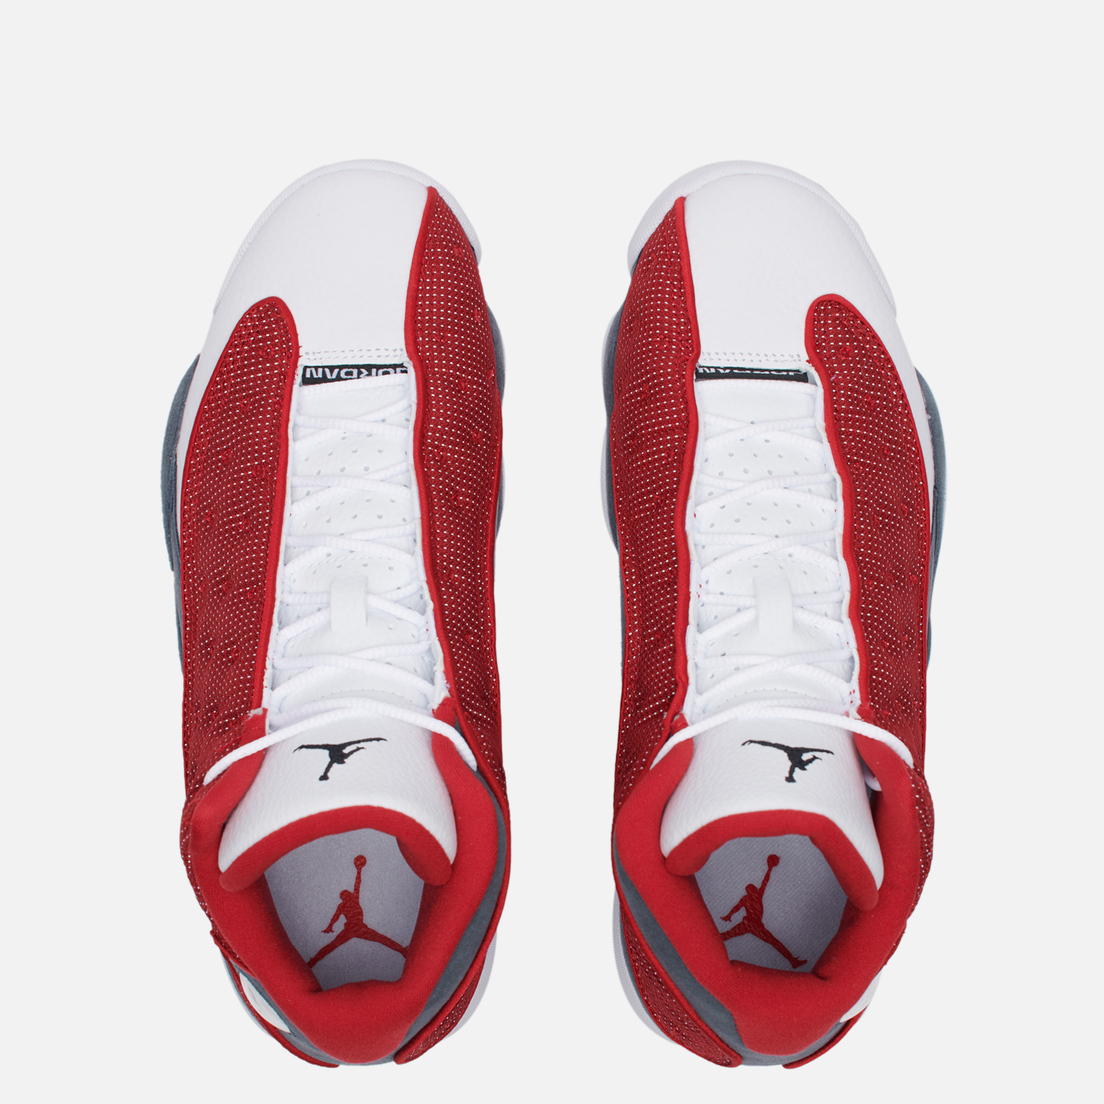 Jordan Мужские кроссовки Air Jordan 13 Retro Gym Red